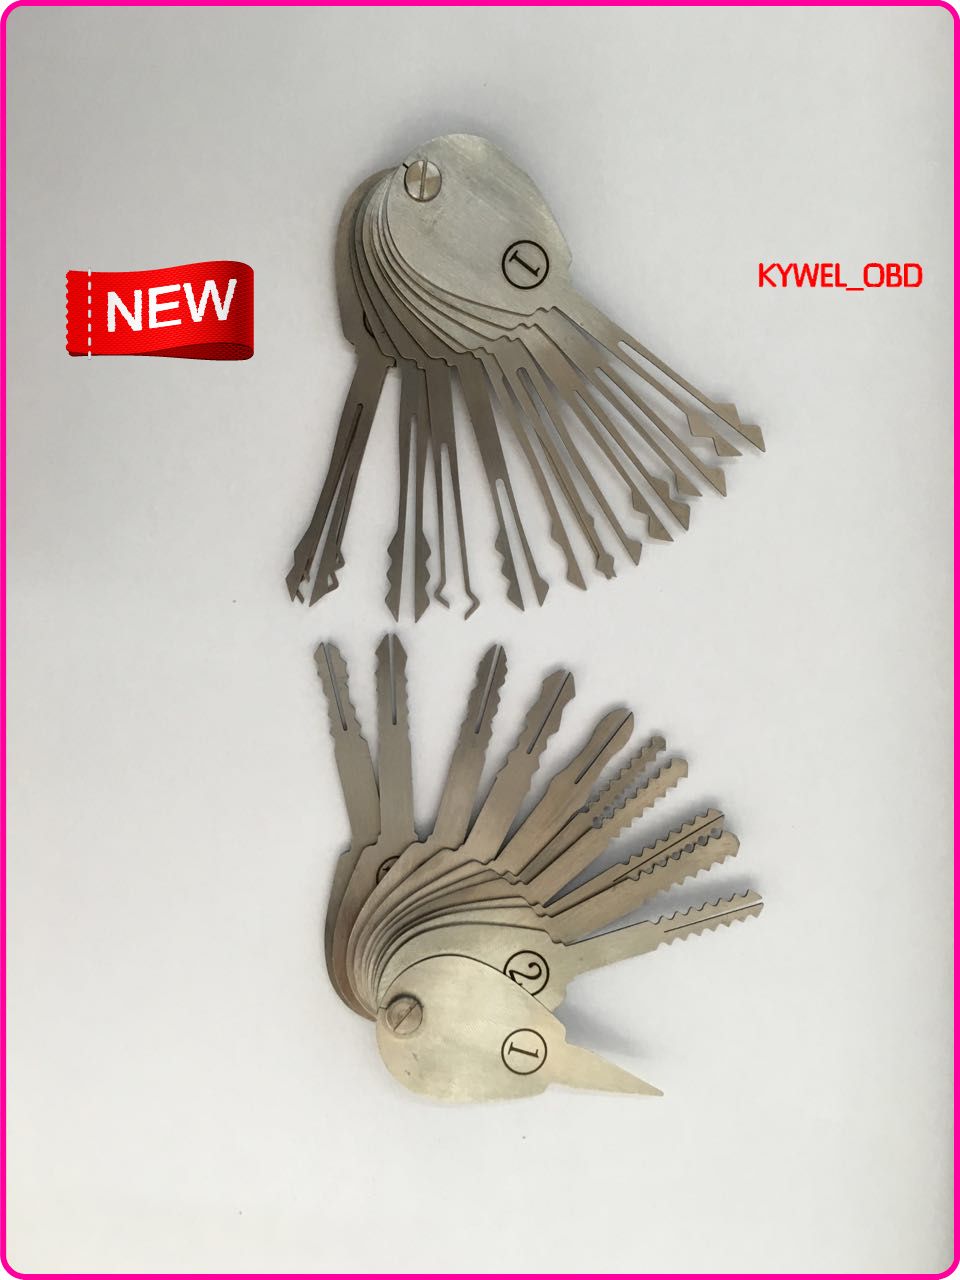 2015 새로운 자동 양면 자물쇠를위한 자동적 인 Jigglers 열쇠는 열쇠의 세트를 고른다 자물쇠 Opener Lockpick는 자물쇠 제조공 공구를 놓는다